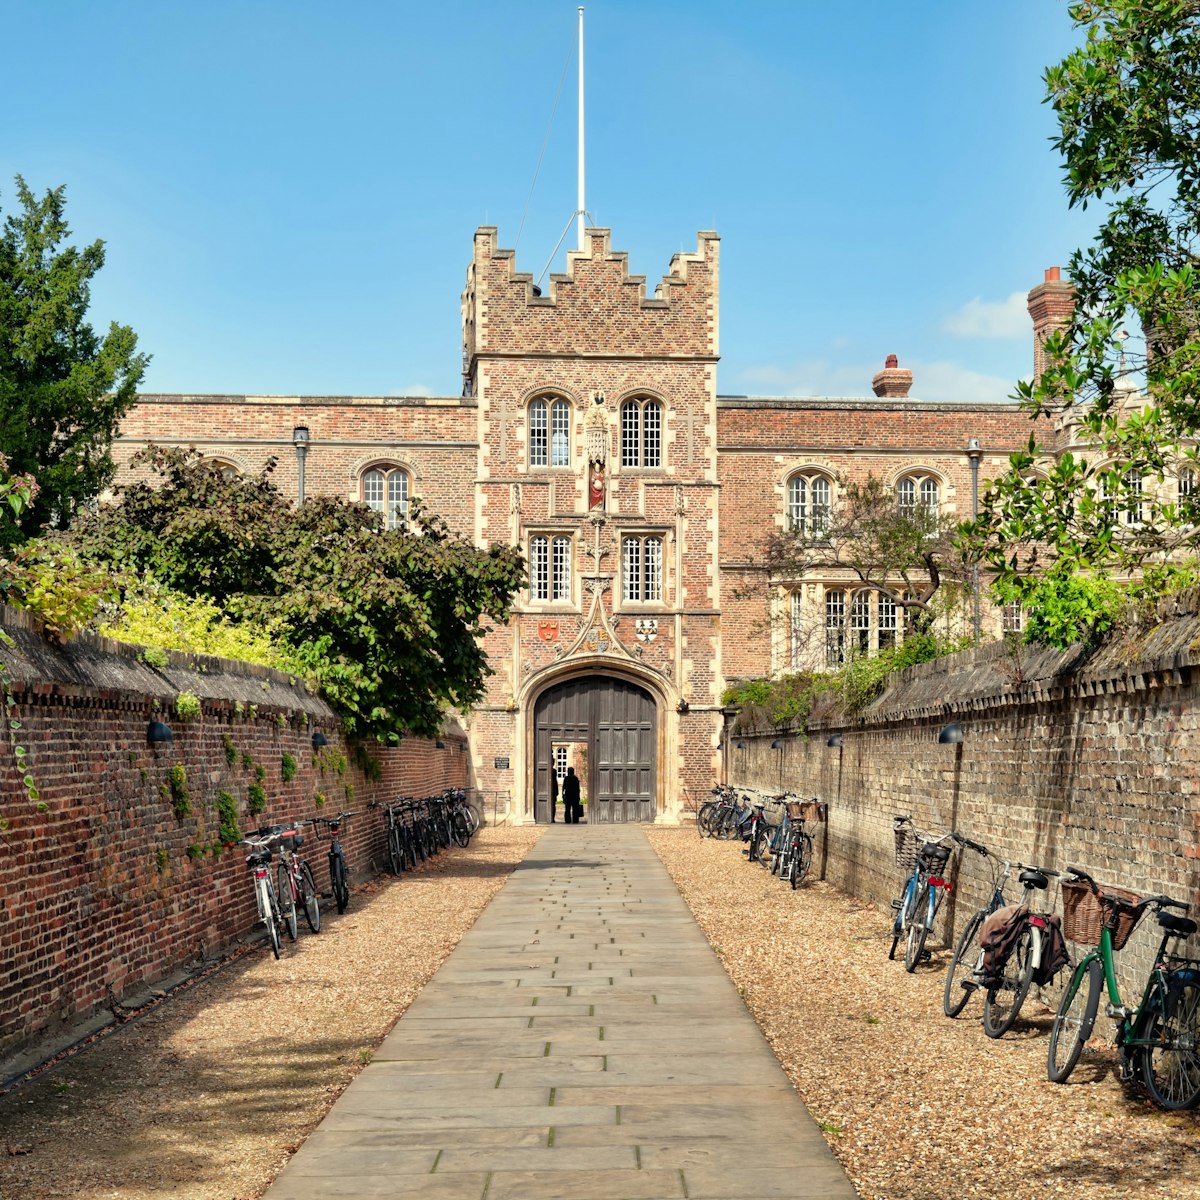 Jesus College, Cambridge. - stock photo
